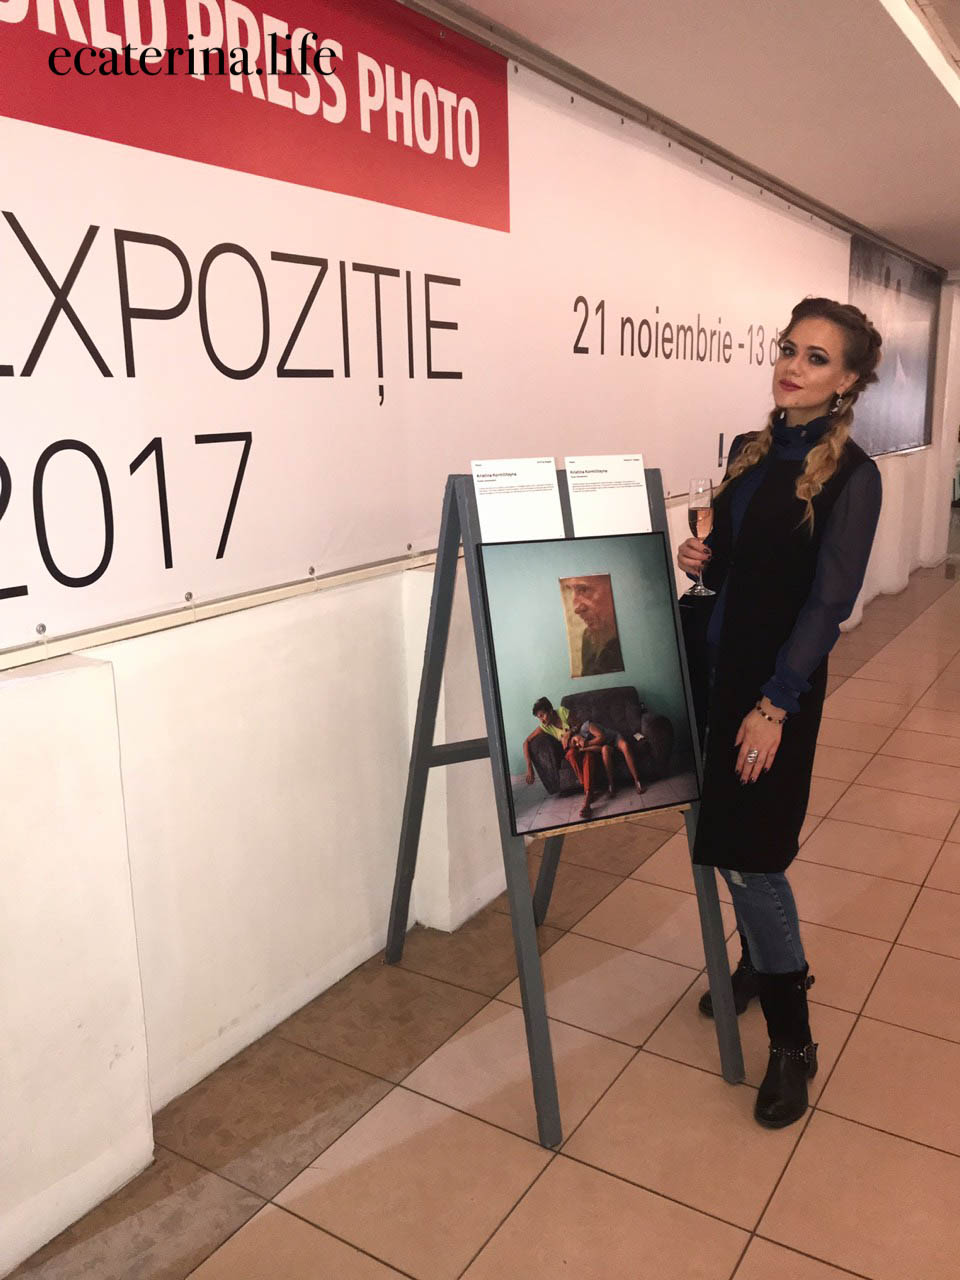 Открытие выставки World Press Photo 2017 в Кишиневе